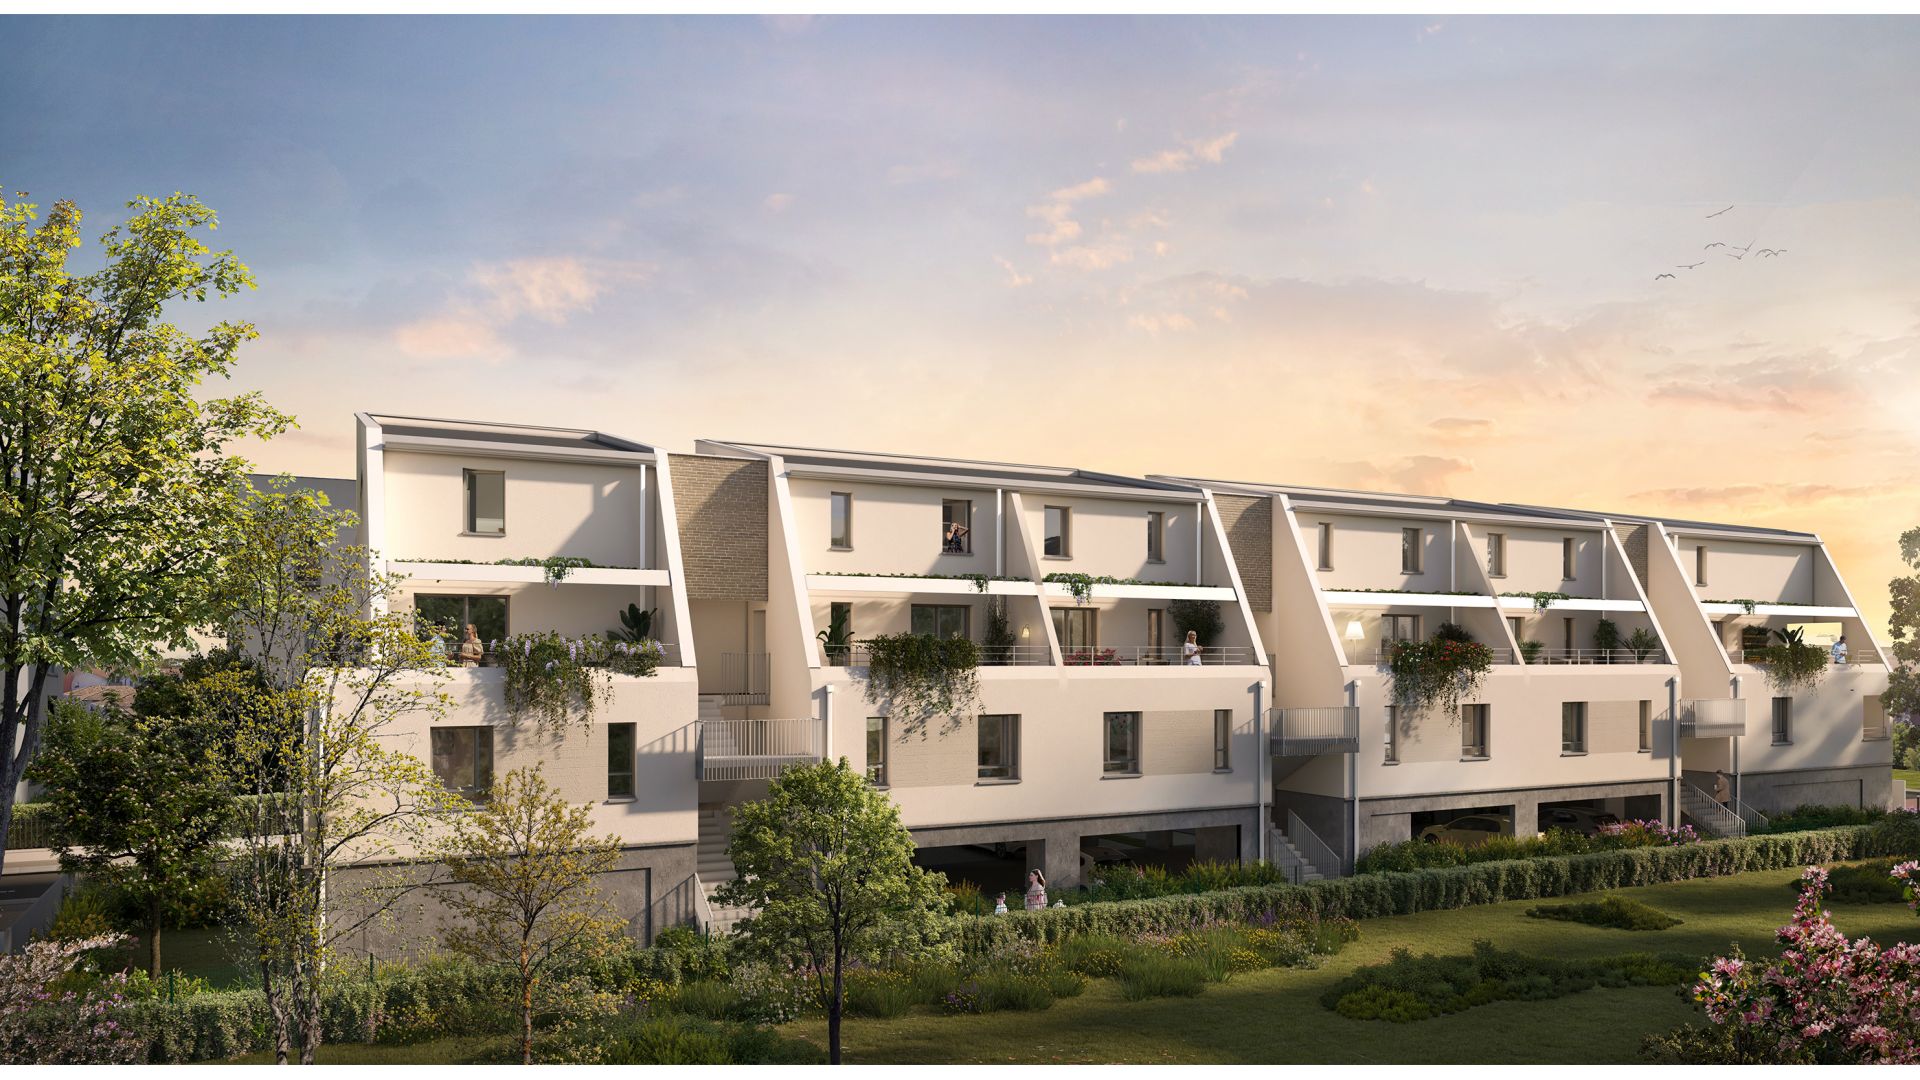 Greencity immobilier - achat appartements neufs du T1Bis au T3Duplex - Résidence La Frégate - Toulouse - Saint-Martin du Touch 31300